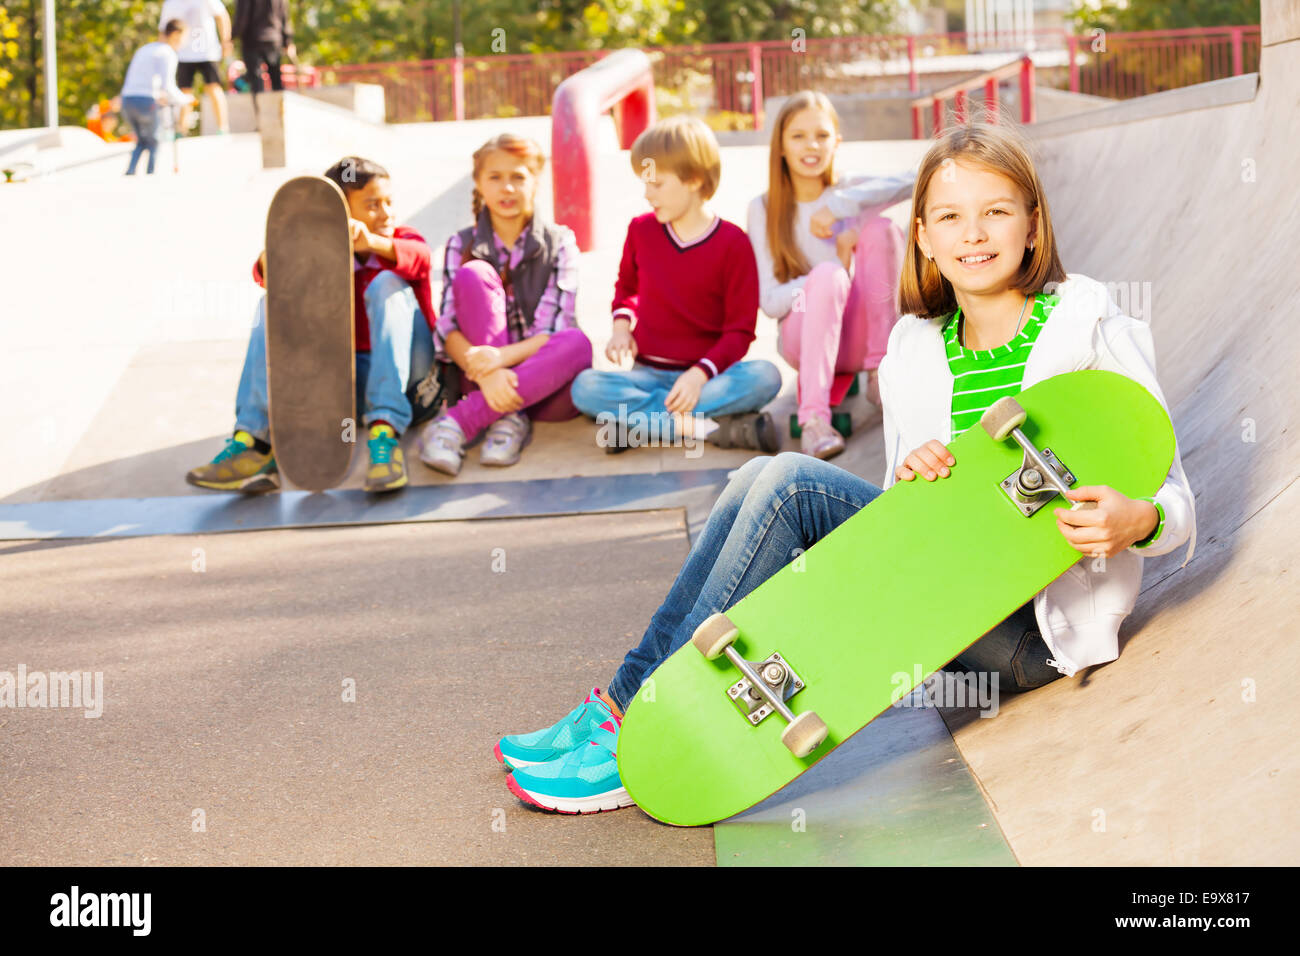 Les enfants s'asseoir derrière et devant avec skateboard Banque D'Images